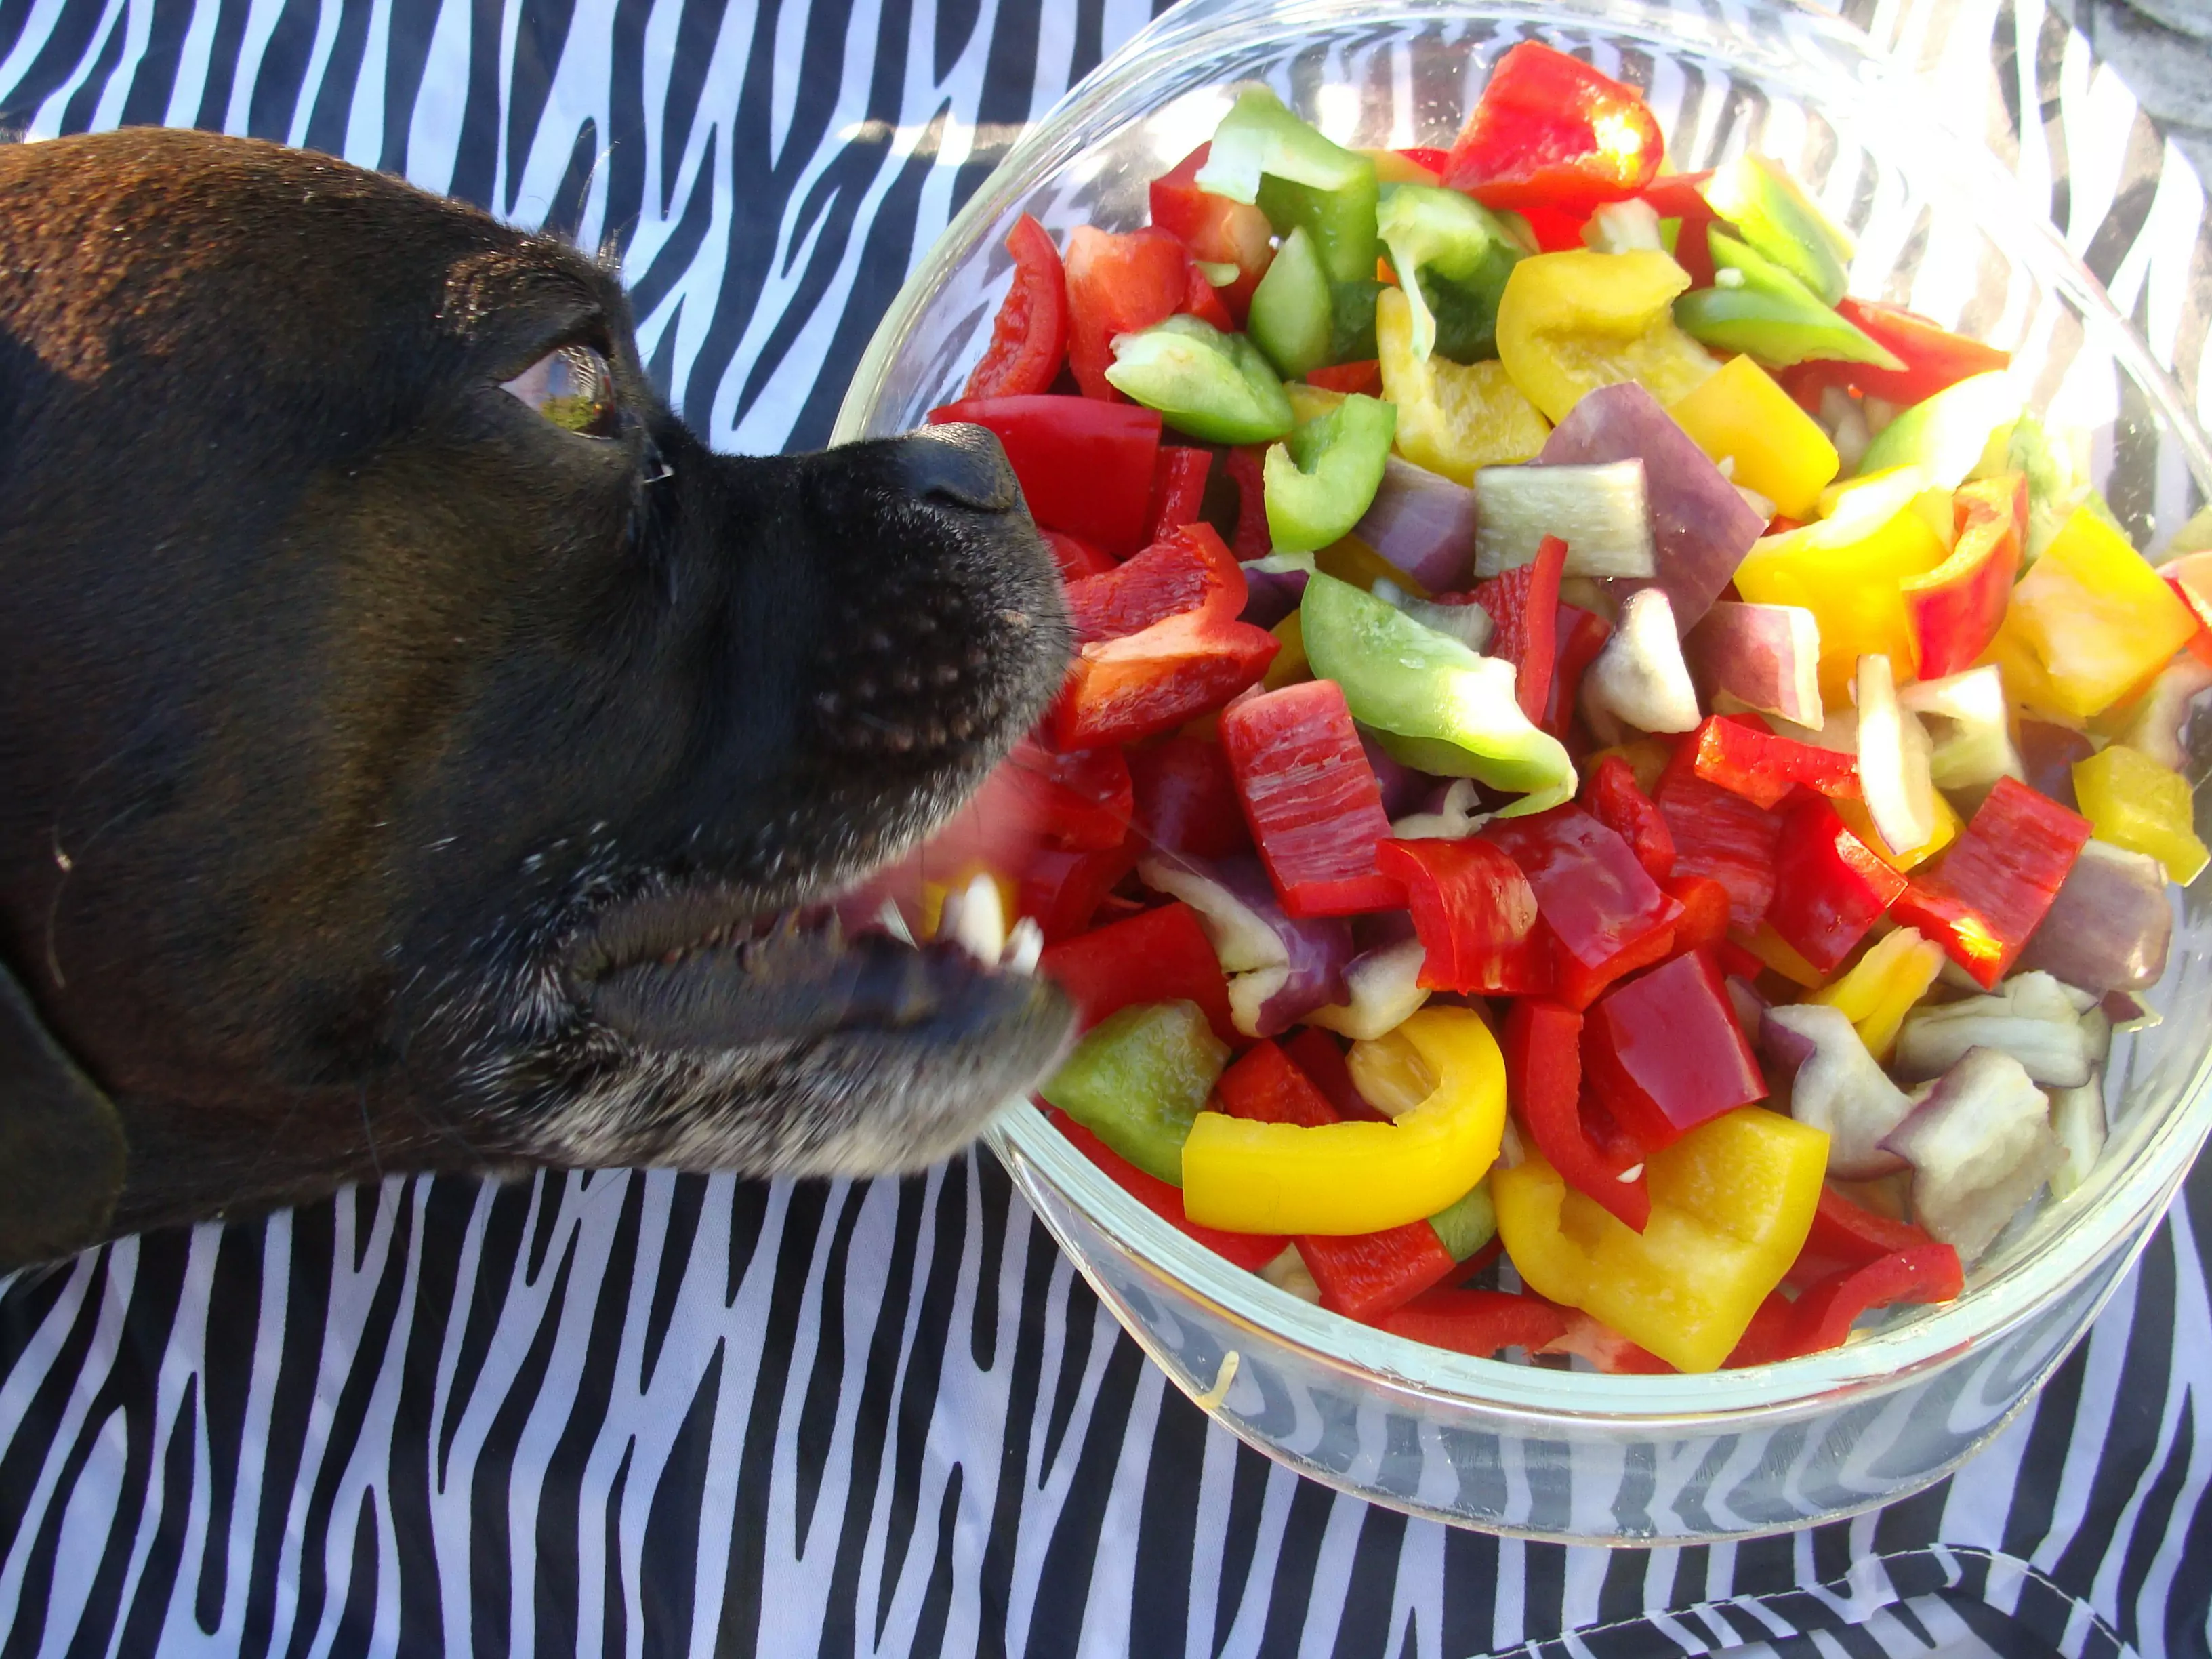 Os cães podem comer pimentas? Os cães comem piripiri como fazer